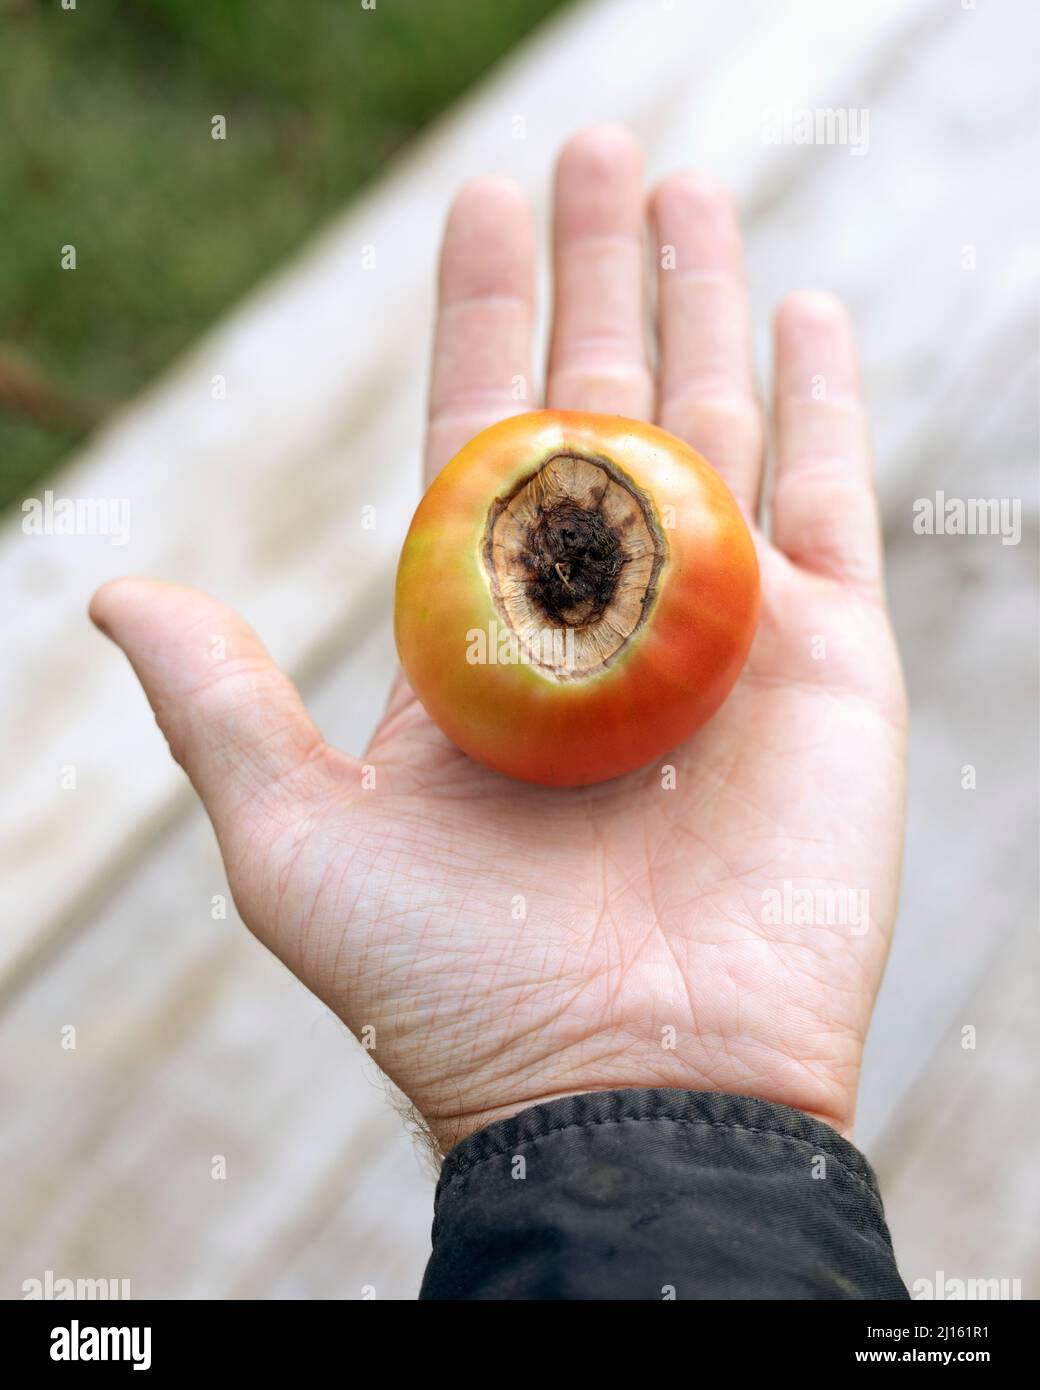 Der Mensch hält Tomate mit verfaulter Spitze, die Frucht ist mit Pilzerkrankungen infiziert Stockfoto